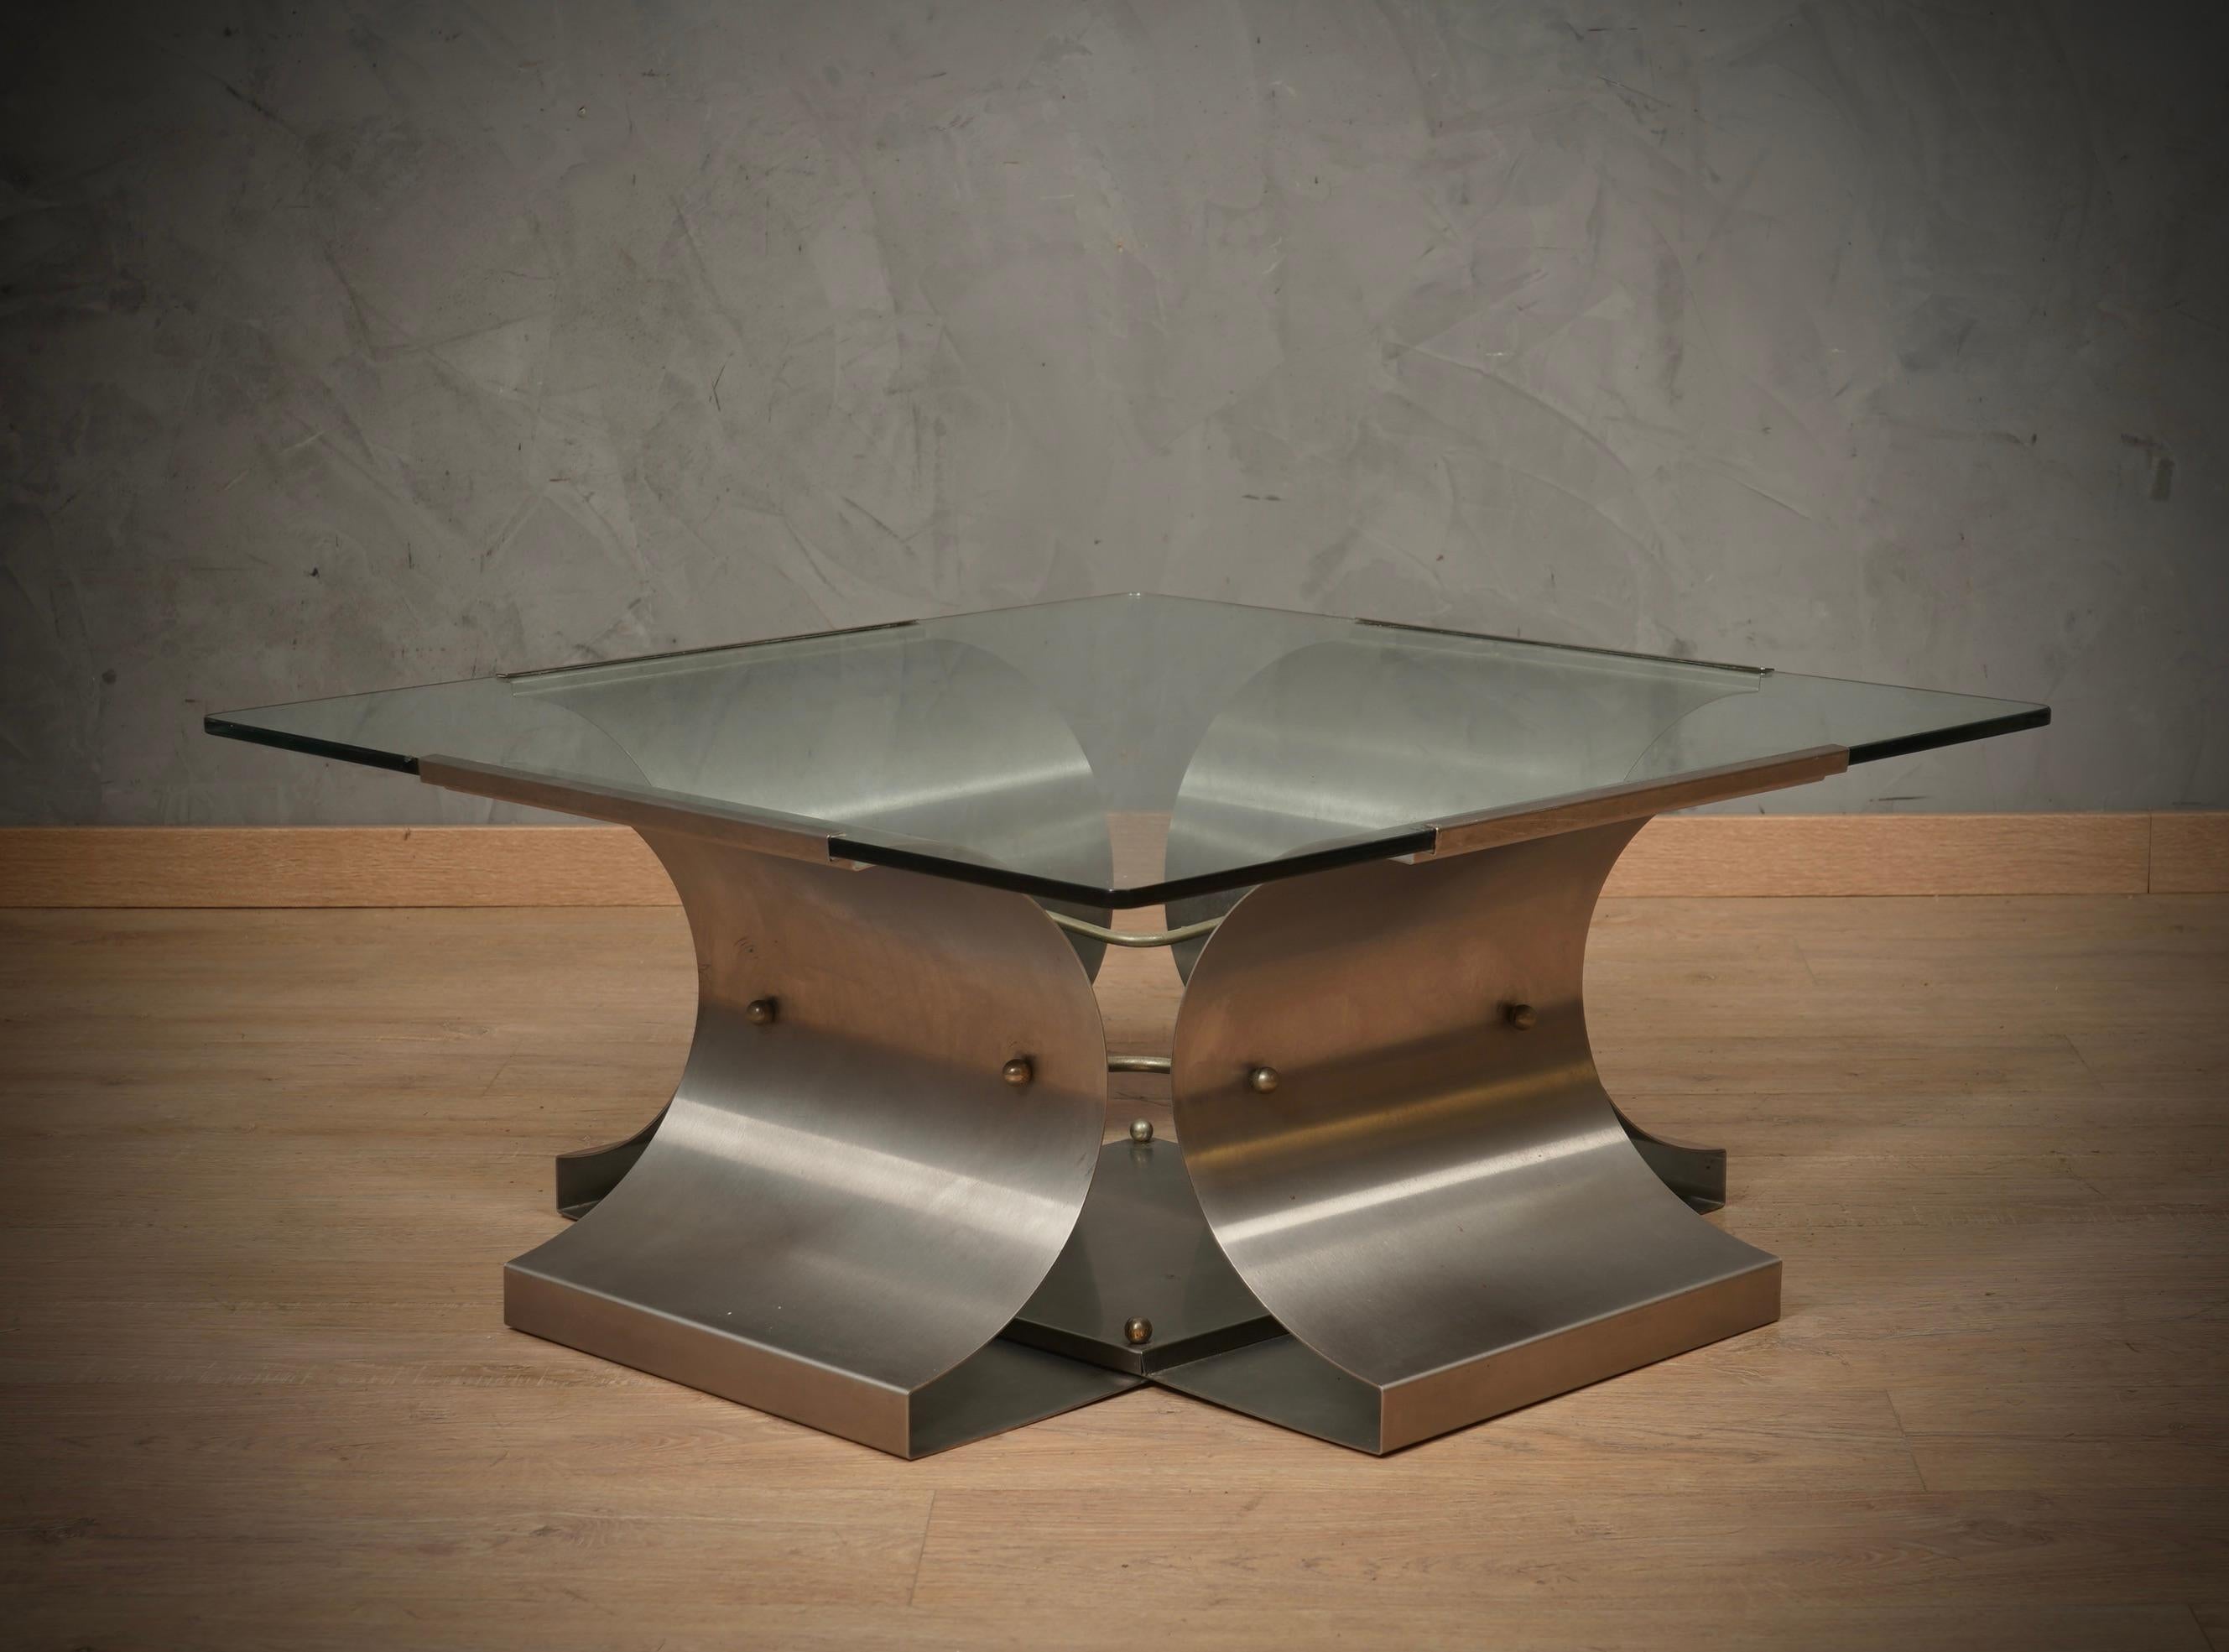 Importante table de canapé de François Monnet, au design et aux matériaux innovants pour l'époque. Ingénieusement conçue, avec ses caractéristiques uniques et son souci du détail, cette table témoigne de la vision novatrice et de la sensibilité